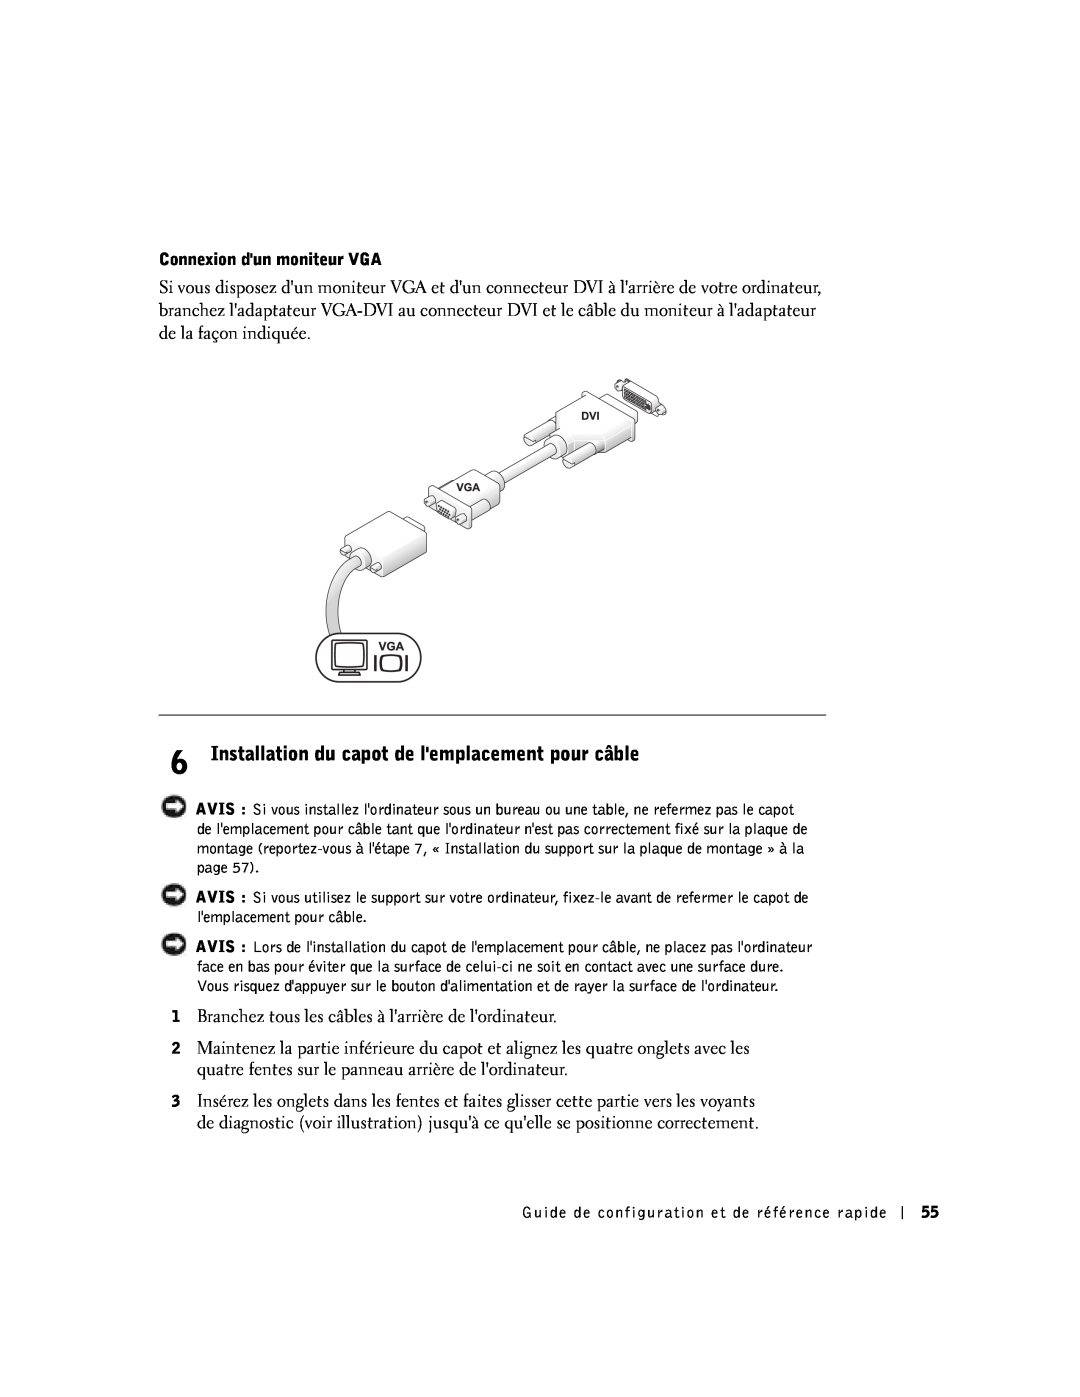 Dell SX manual Installation du capot de lemplacement pour câble 